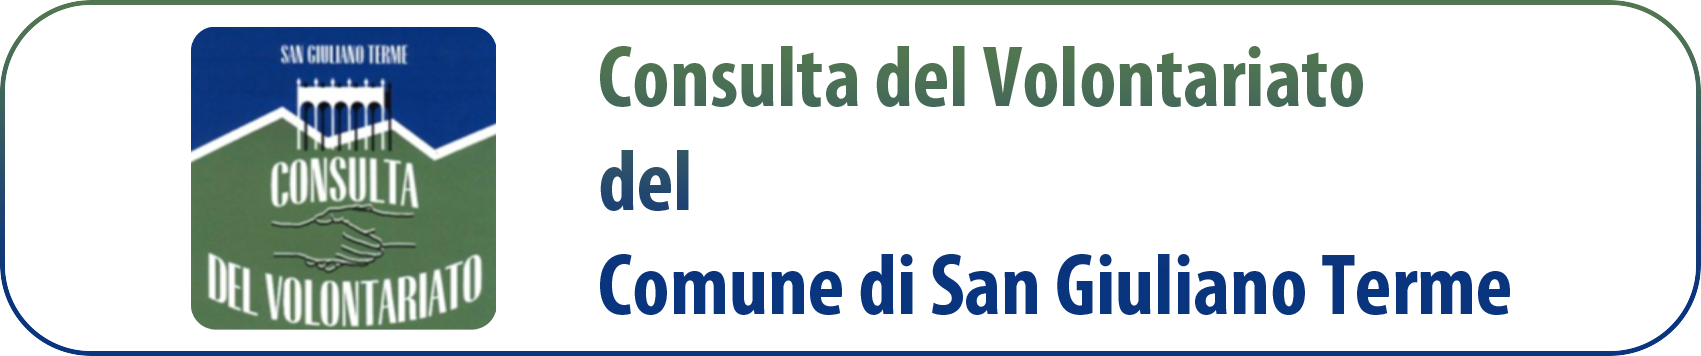 Consulta del Volontariato di San Giuliano Terme